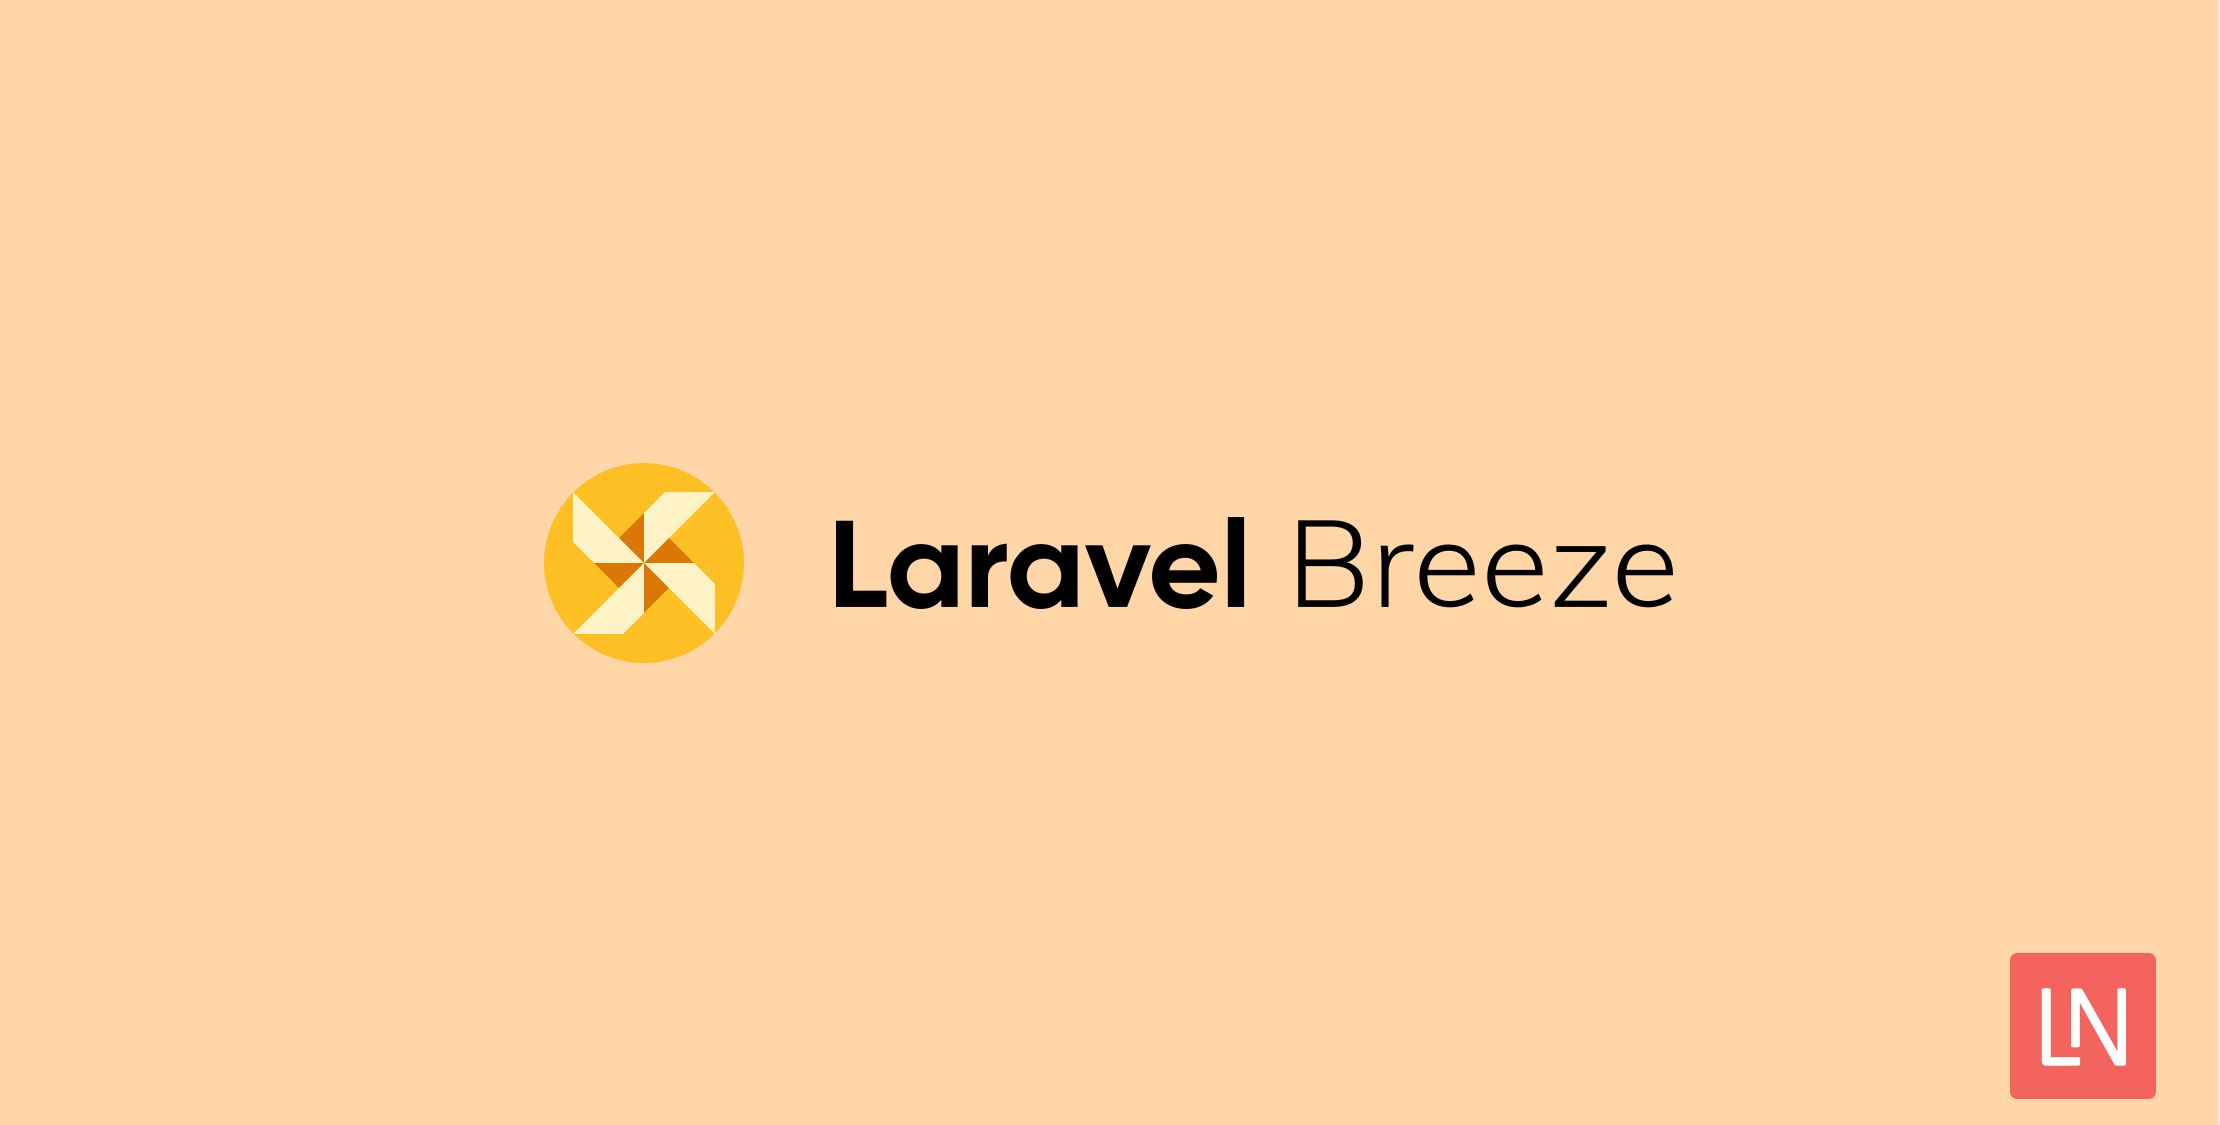 Підтримка TypeScript додається до Laravel Breeze